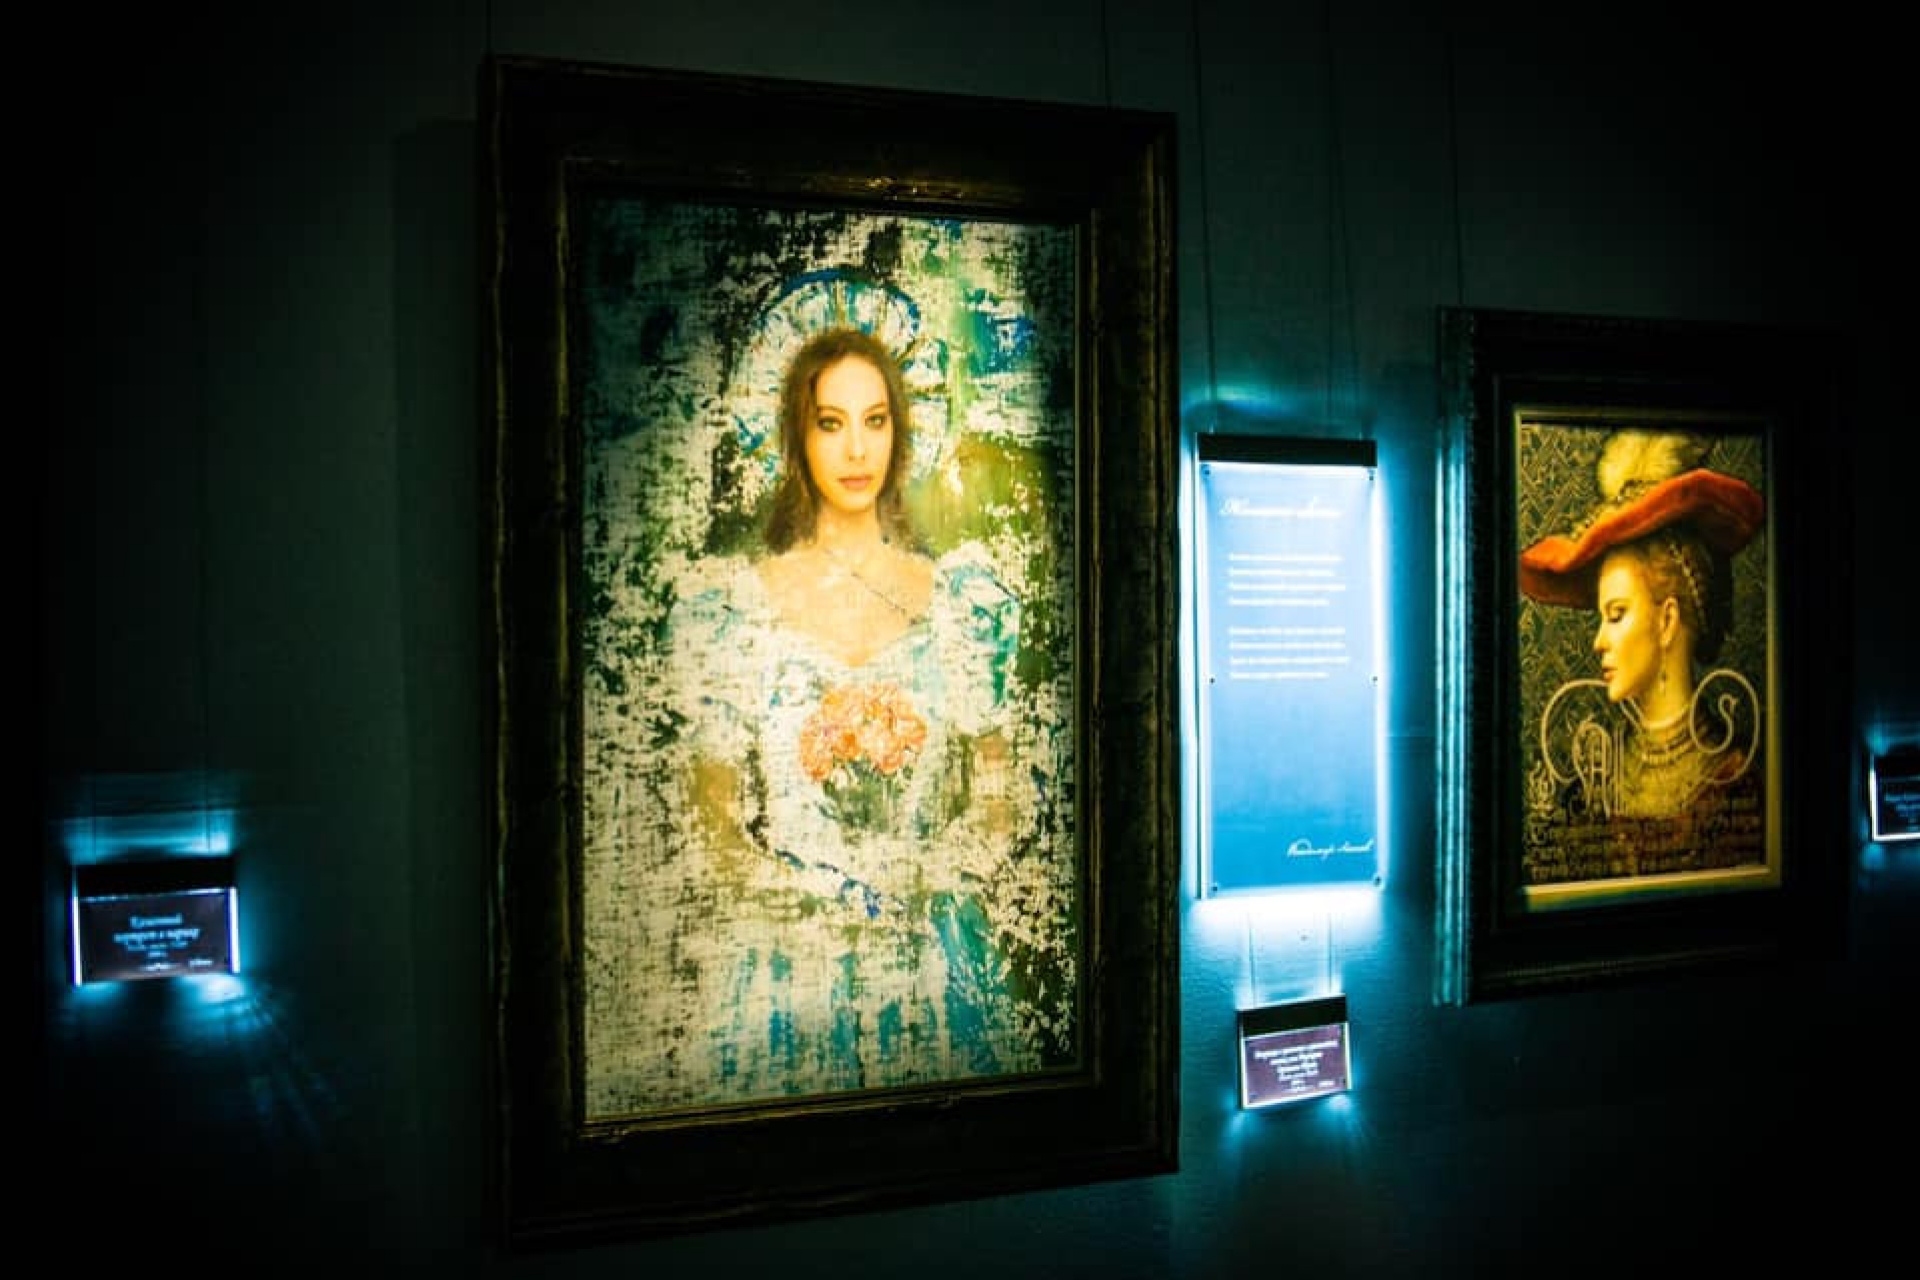 Sobre qué guardan silencio las pinturas: exhibition 16 de diciembre 2020 – de enero, Orenburgo el museo de bellas artes, Orenburg | Arthive